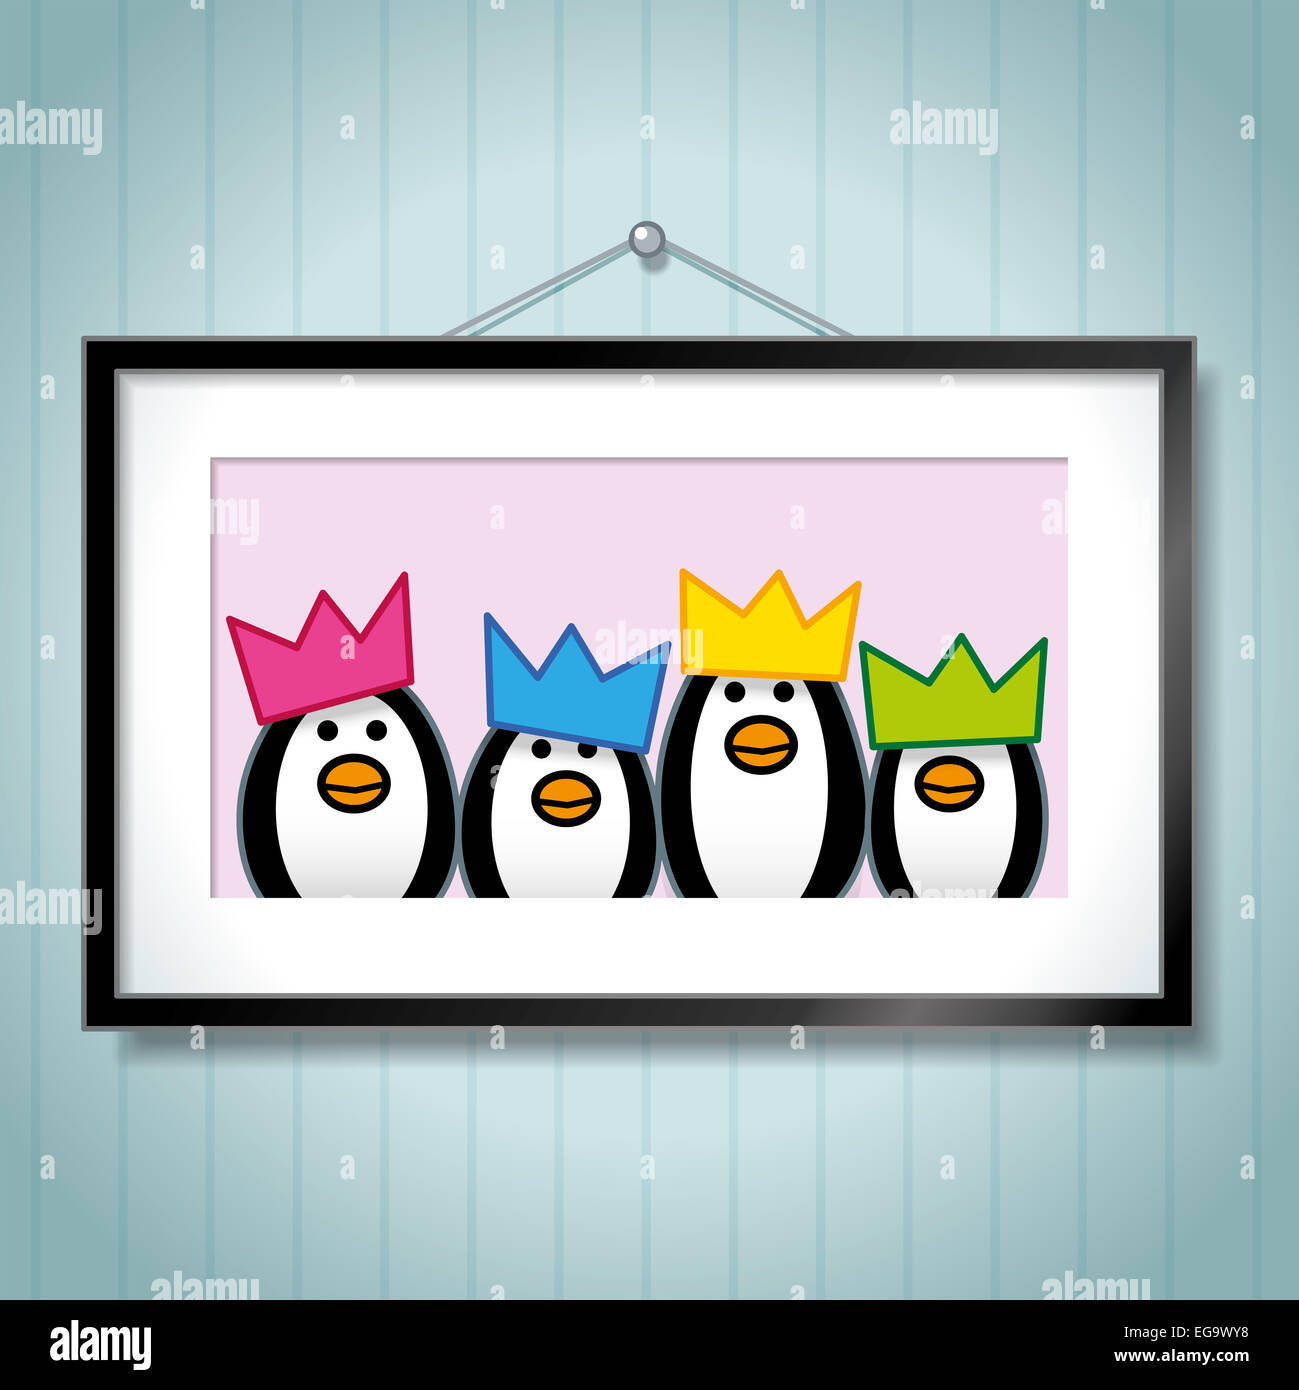 Joli Portrait de famille de pingouins Wearing Party Hats Cadre Photo en tant que fond bleu accroché sur Banque D'Images